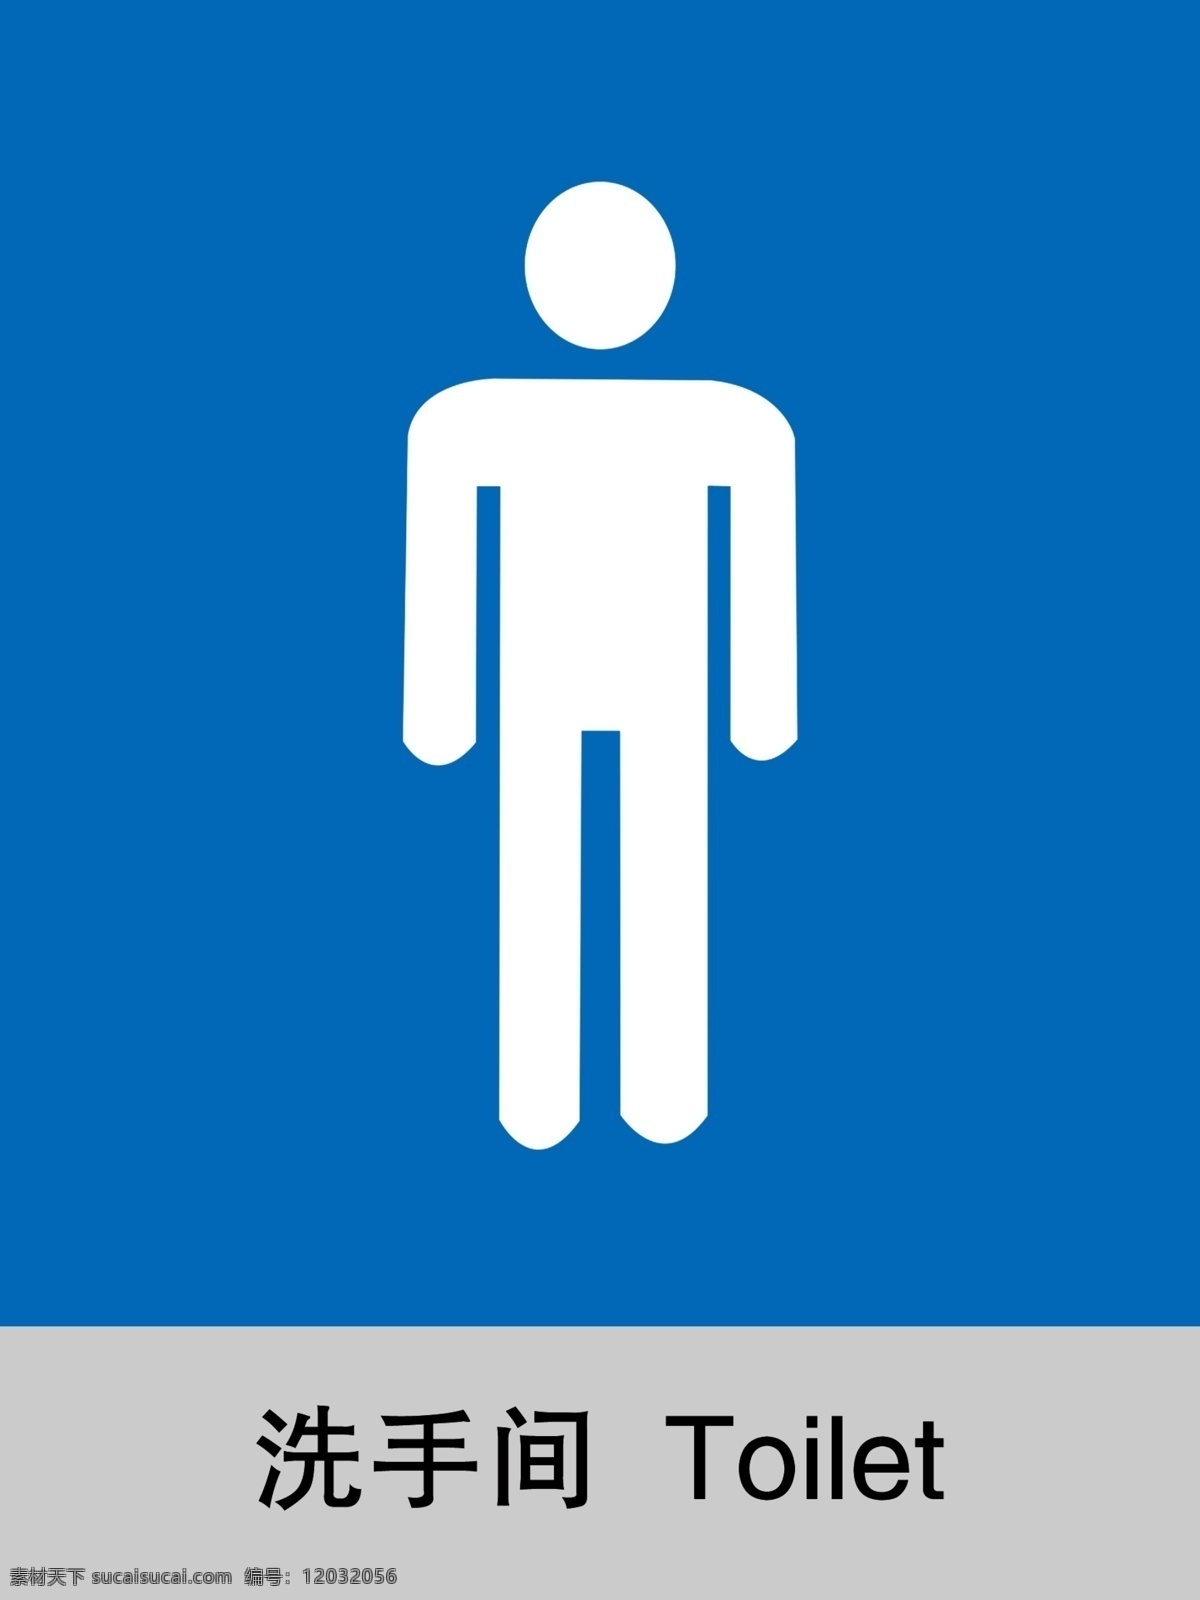 男洗手间 洗手间 洗手间门牌 卫生间 男卫生间 标示牌 分层